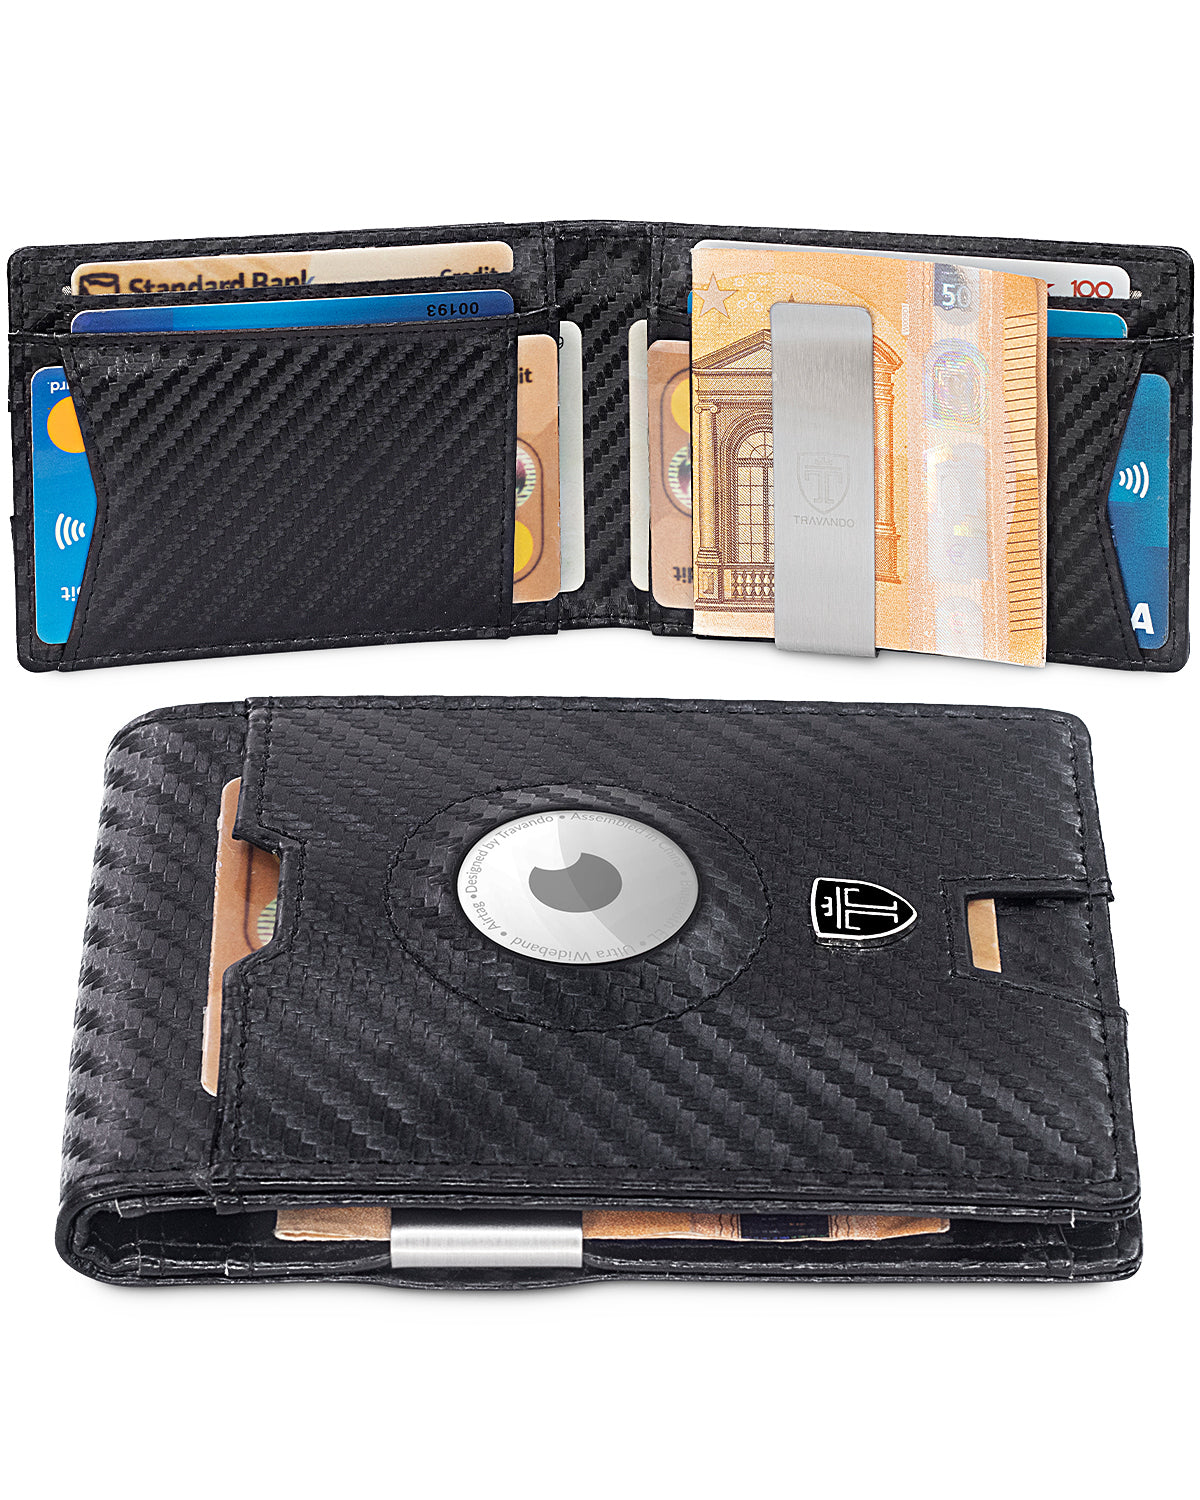 Geldbörse Wallet mit Wallets (carbon) - TRAVANDO Geldklammer AirTag*